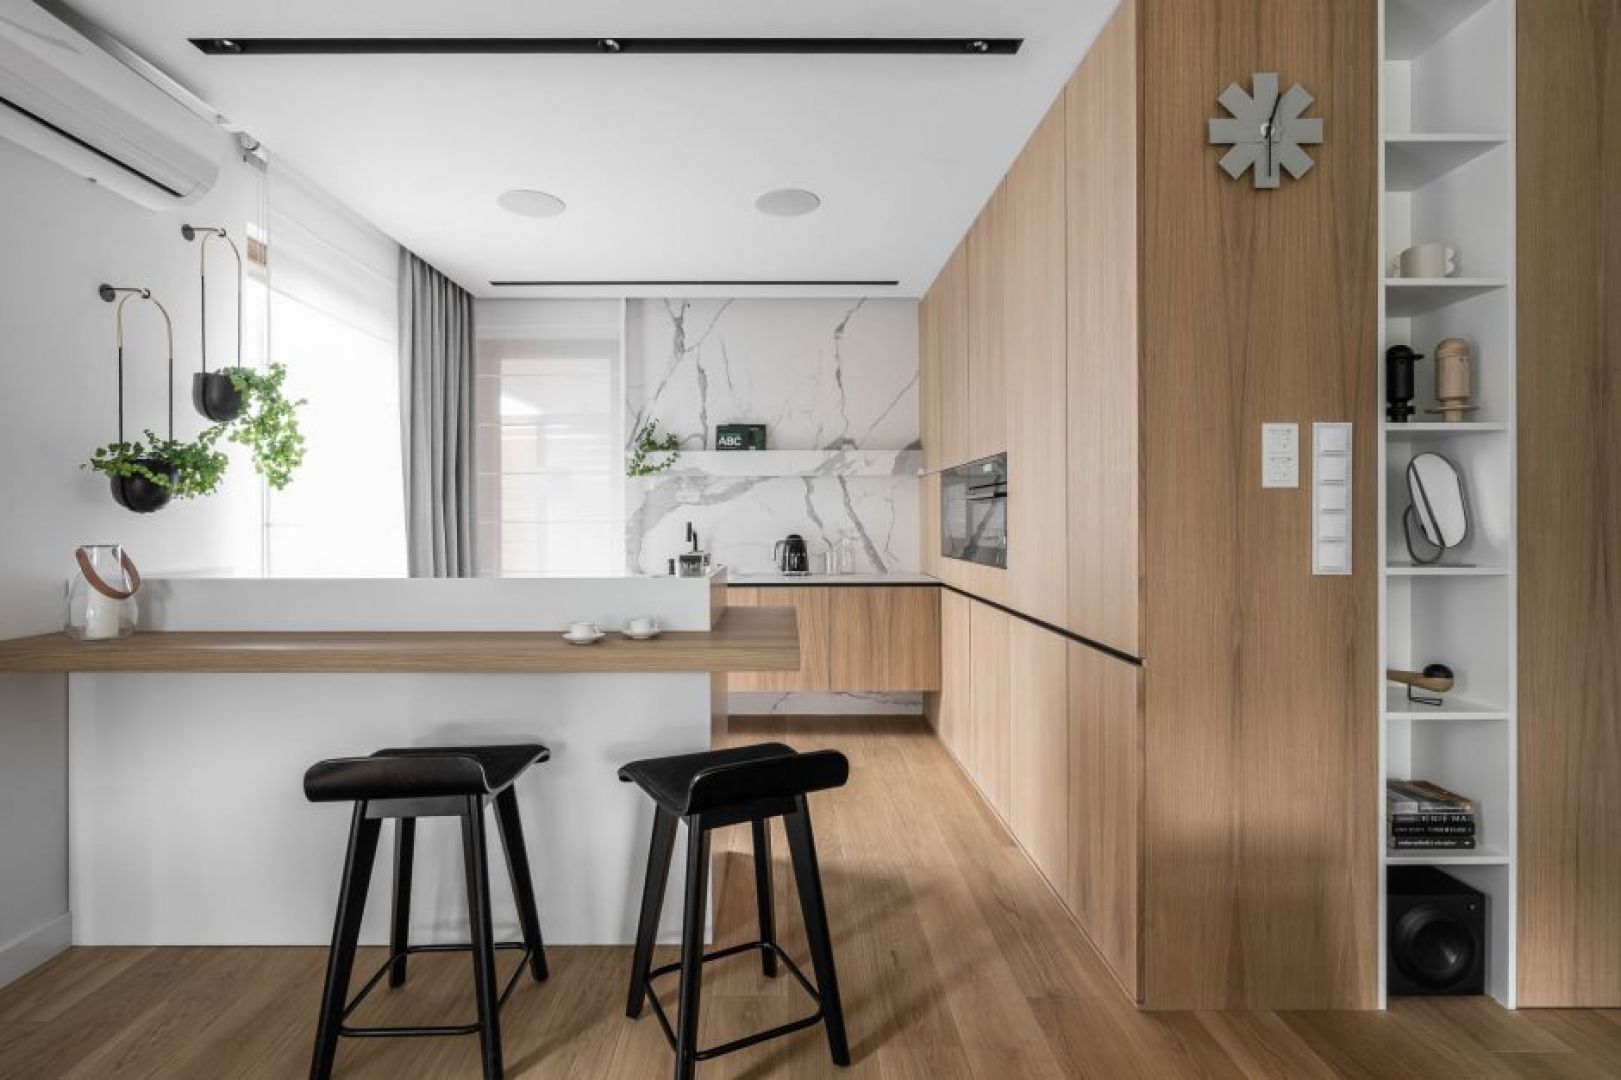 Kolor biały i jasne drewno tworzą eleganckie połączenie w kuchni otwartej na salon. Projekt: Anna Maria Sokołowska. Fot. Fotomohito